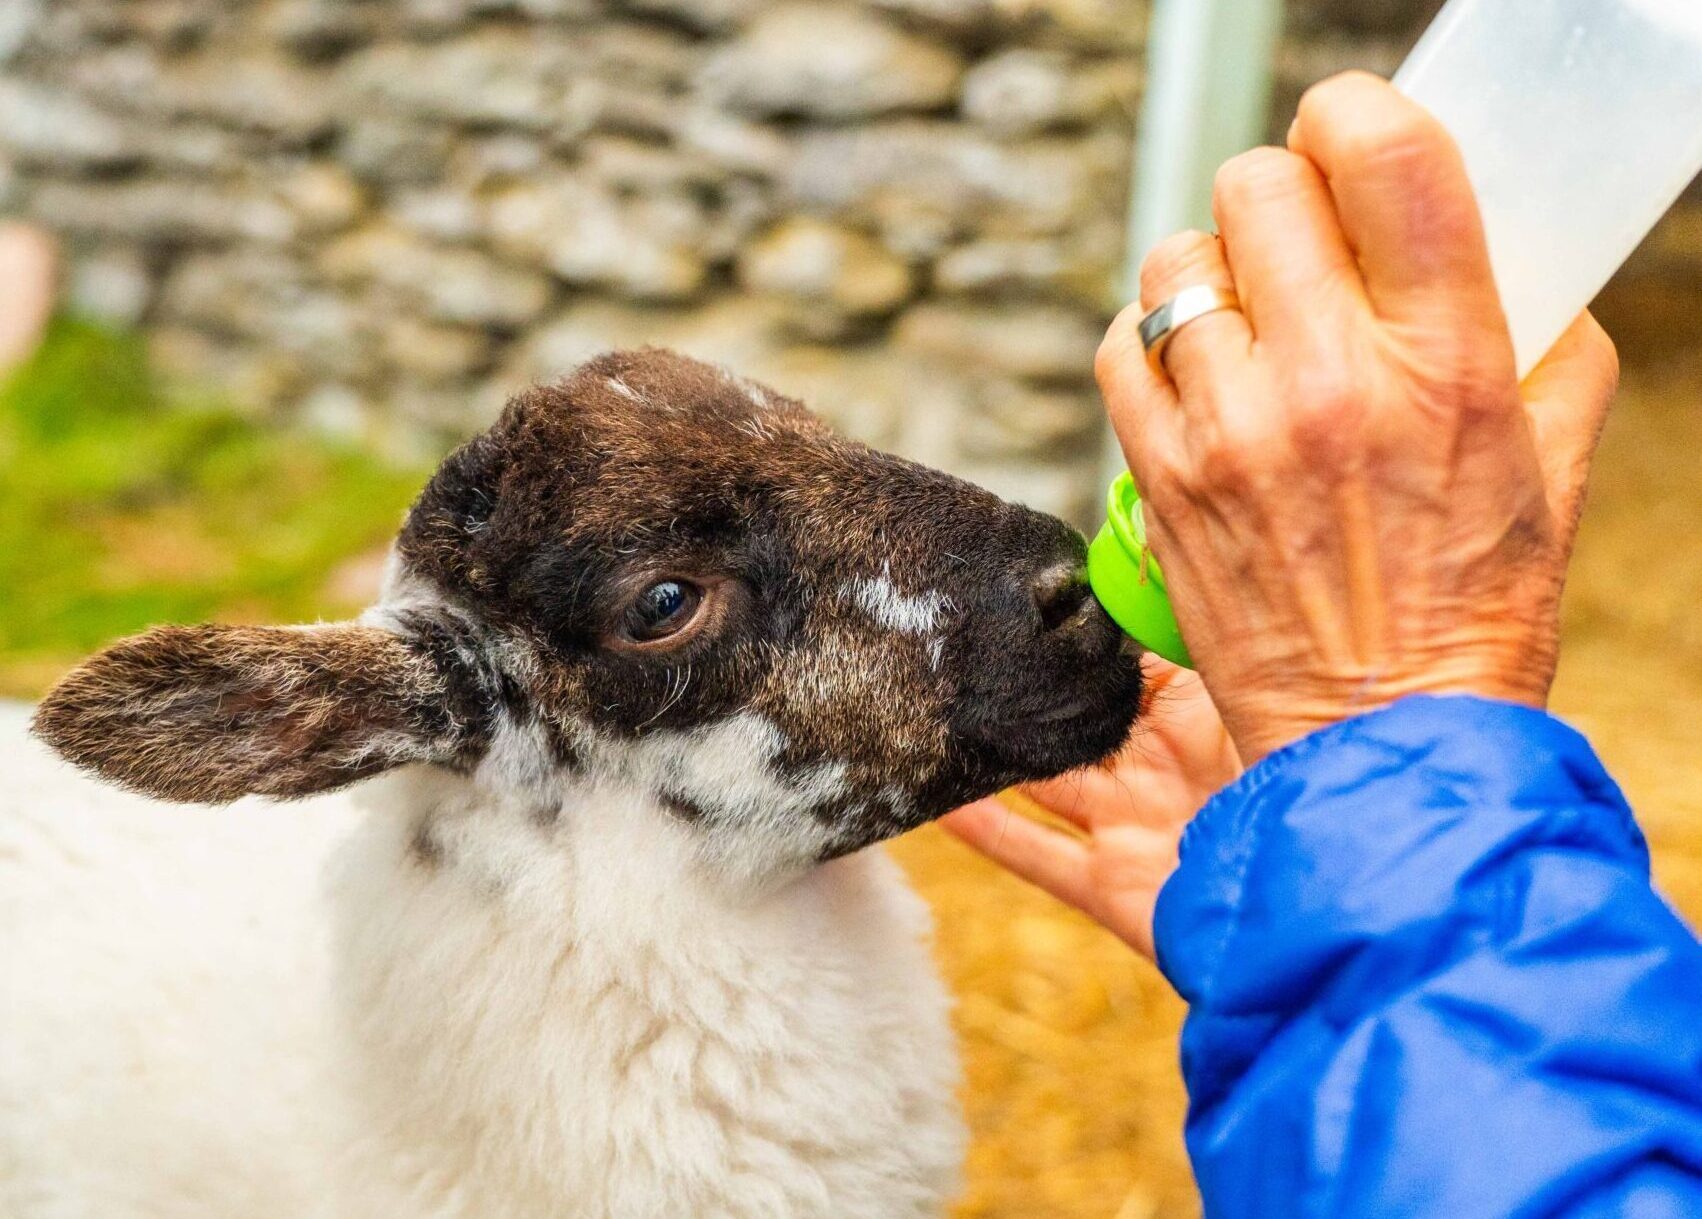 Feeding a Baby Lamb Ireland